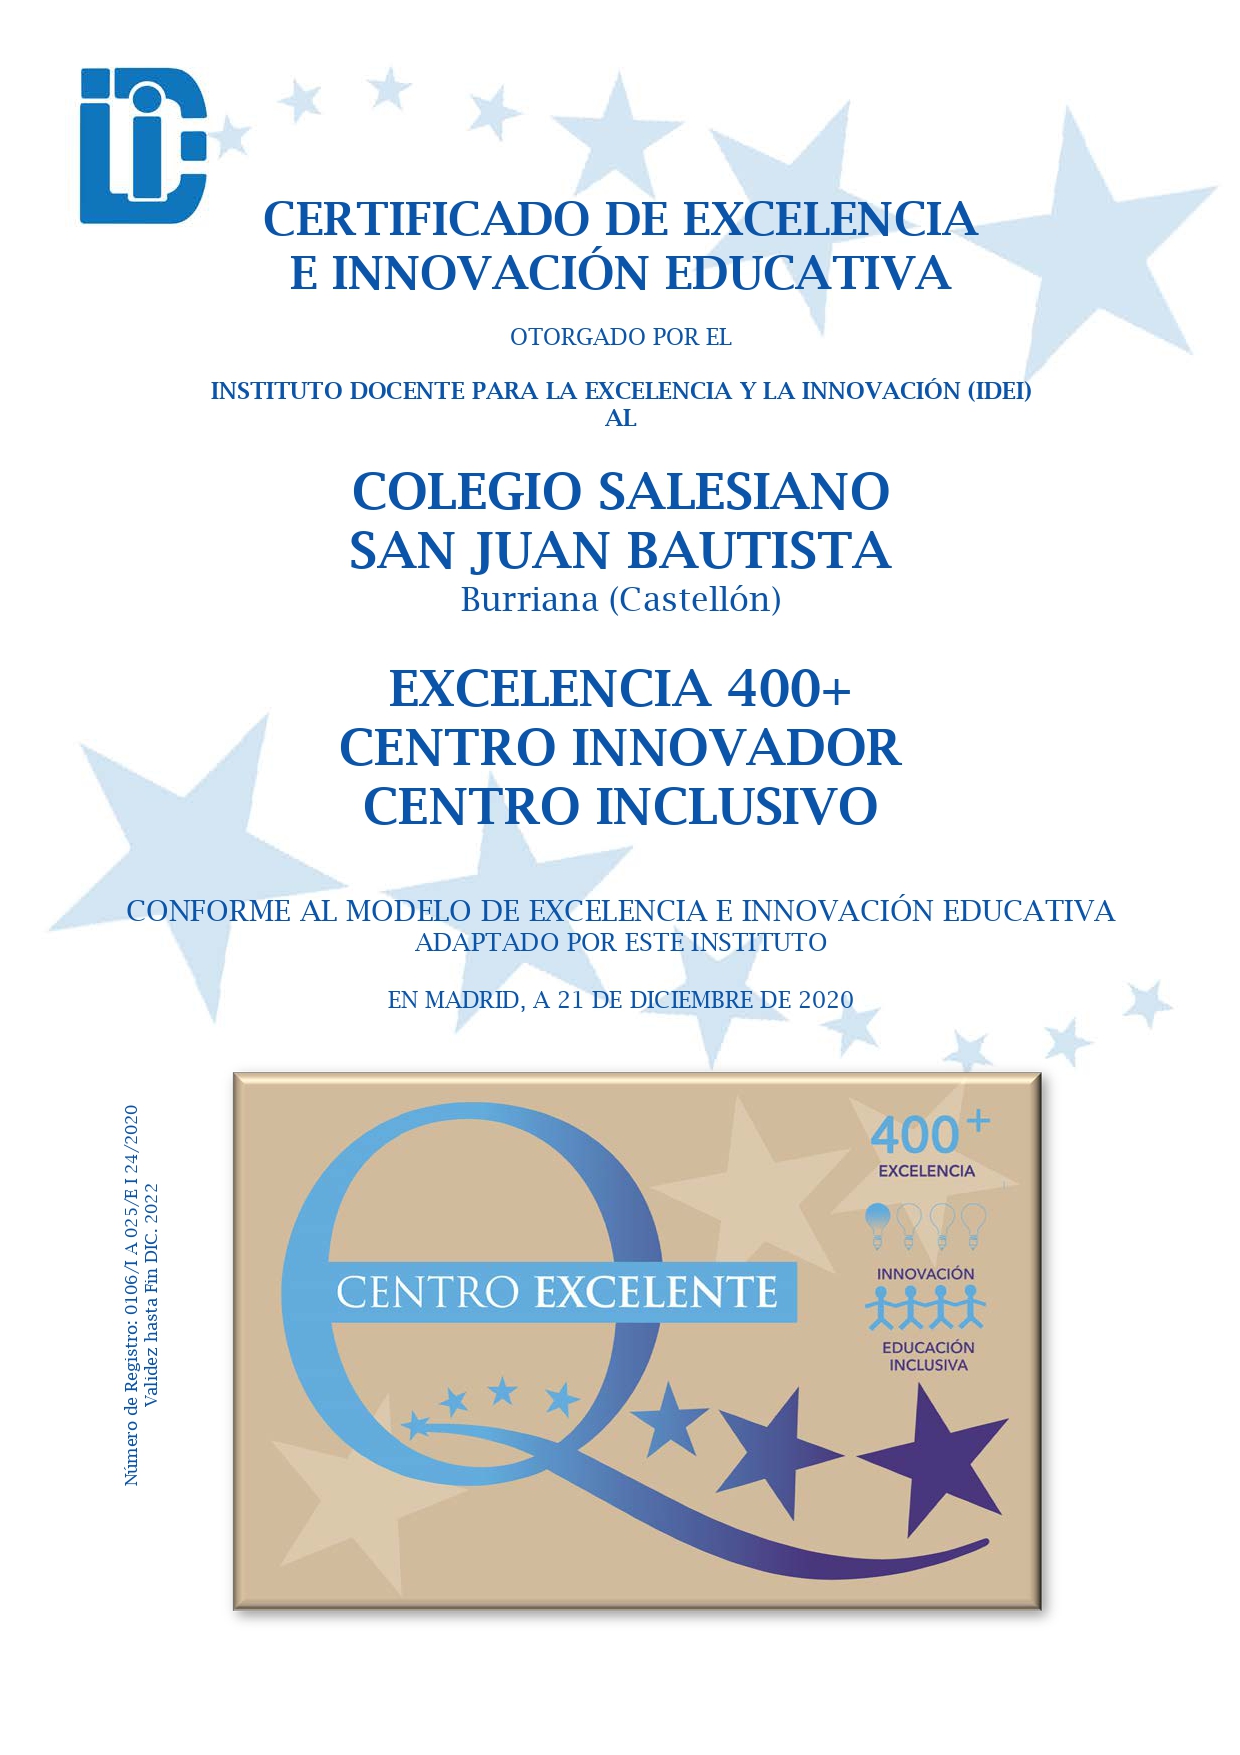 Salesianos Burriana obtiene el Certificado Excelencia 400+ - Colegio  Salesiano Burriana